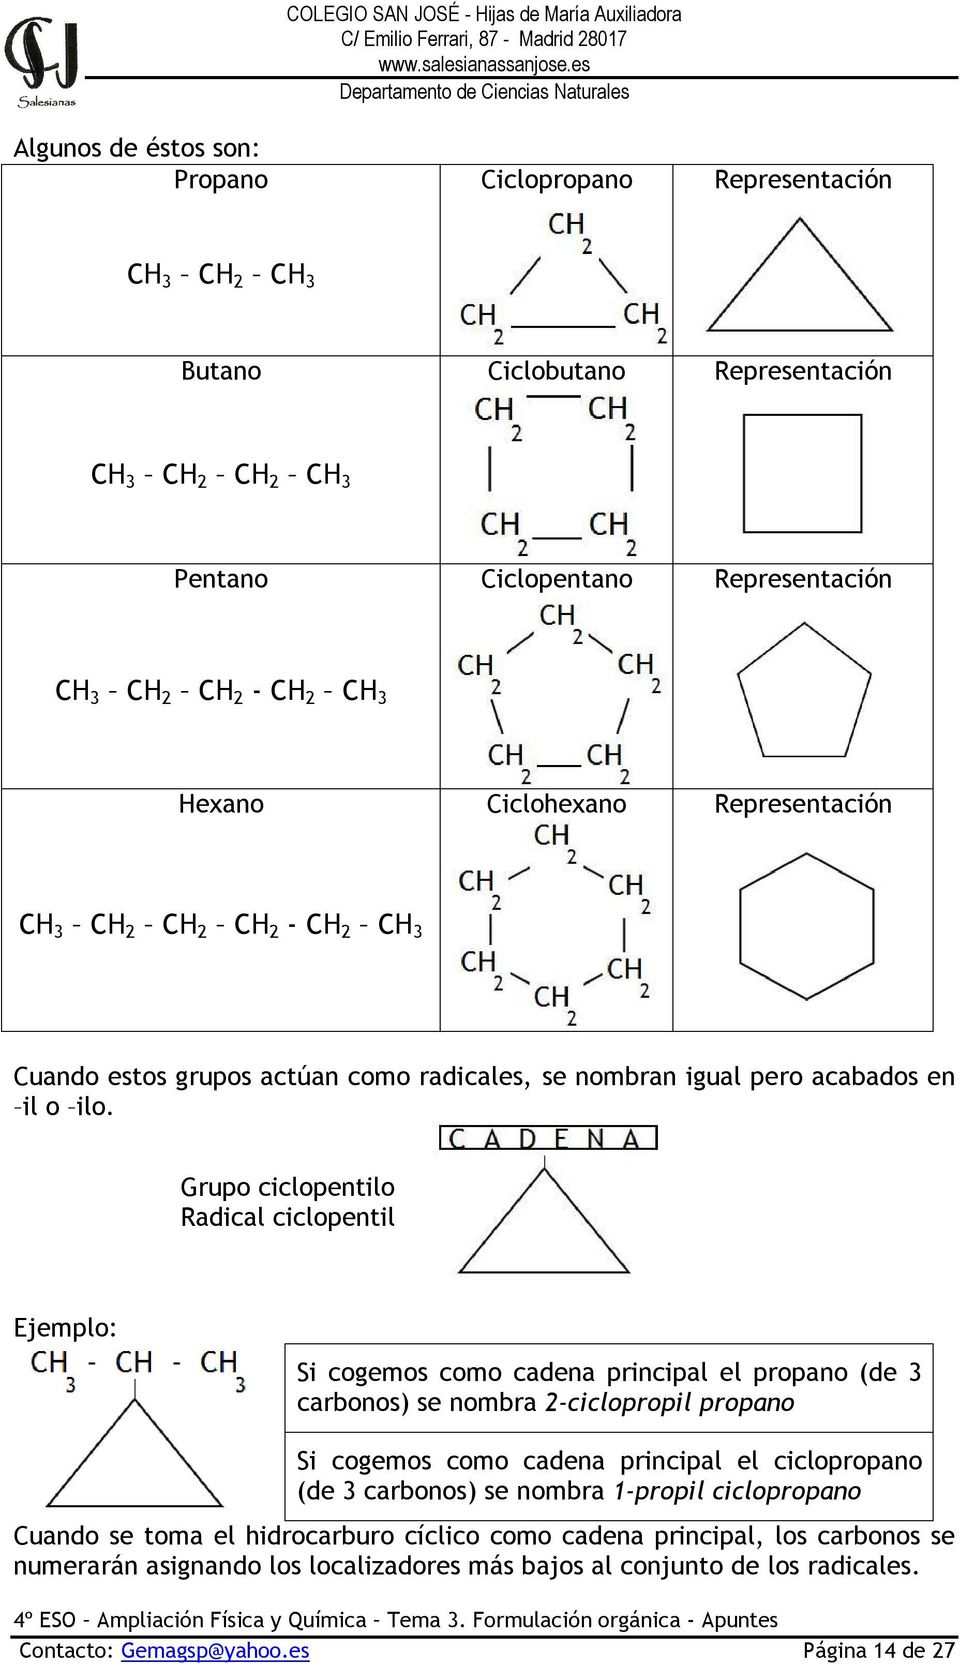 Grupo ciclopentilo Radical ciclopentil Ejemplo: Si cogemos como cadena principal el propano (de 3 carbonos) se nombra 2-ciclopropil propano Si cogemos como cadena principal el ciclopropano (de 3